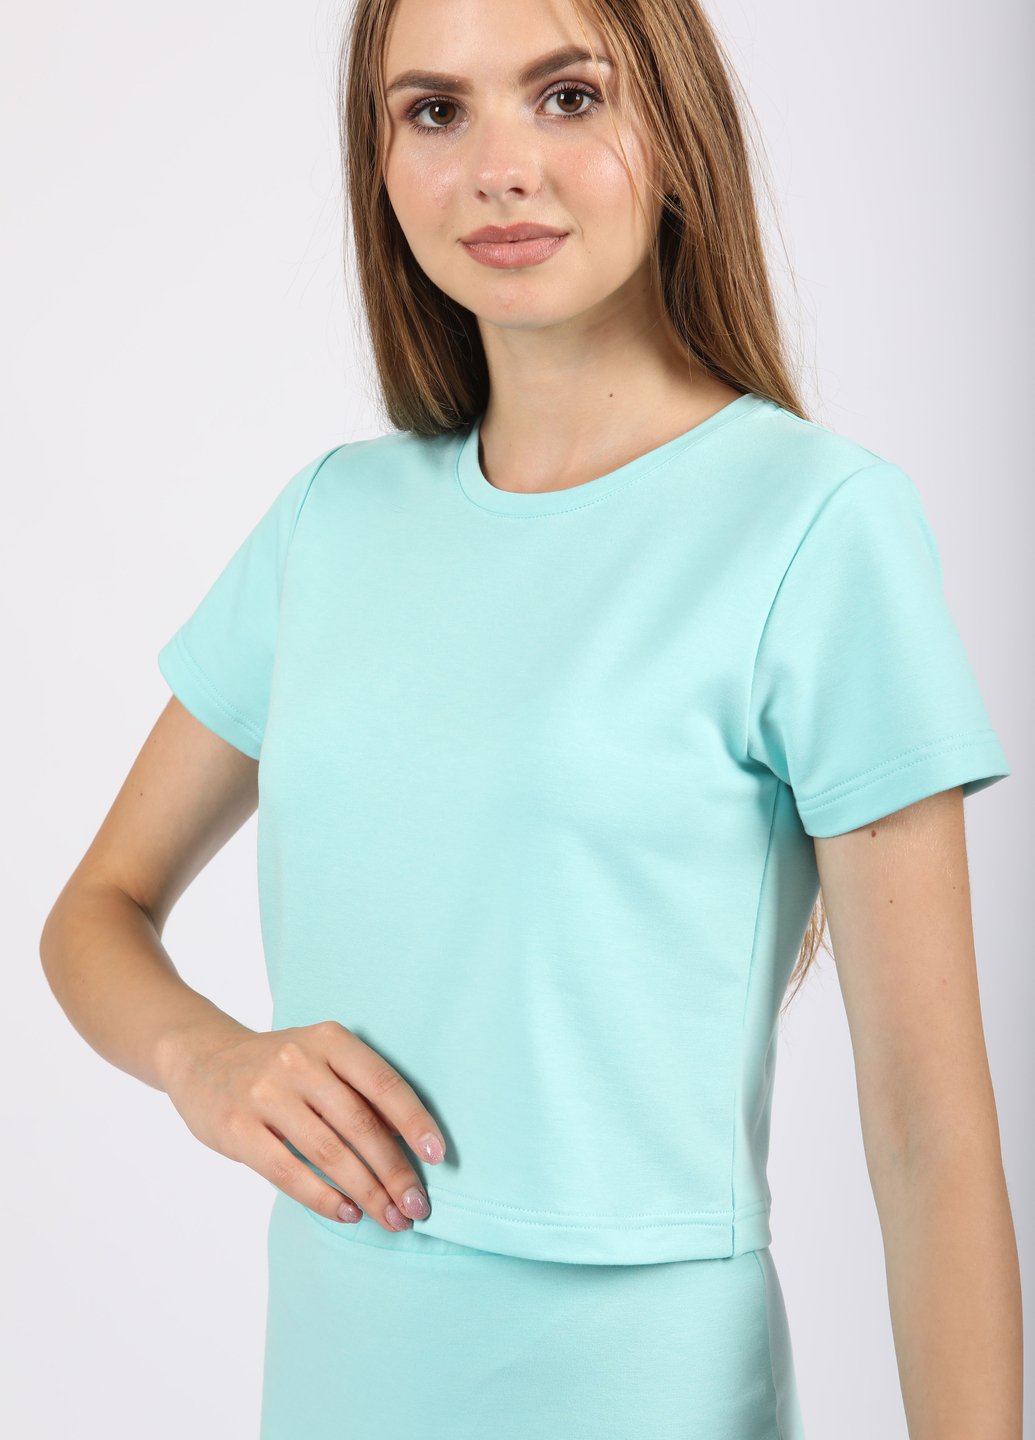 Купить Укороченная футболка женская Merlini Монруж 800000009 - Голубой, 42 в интернет-магазине